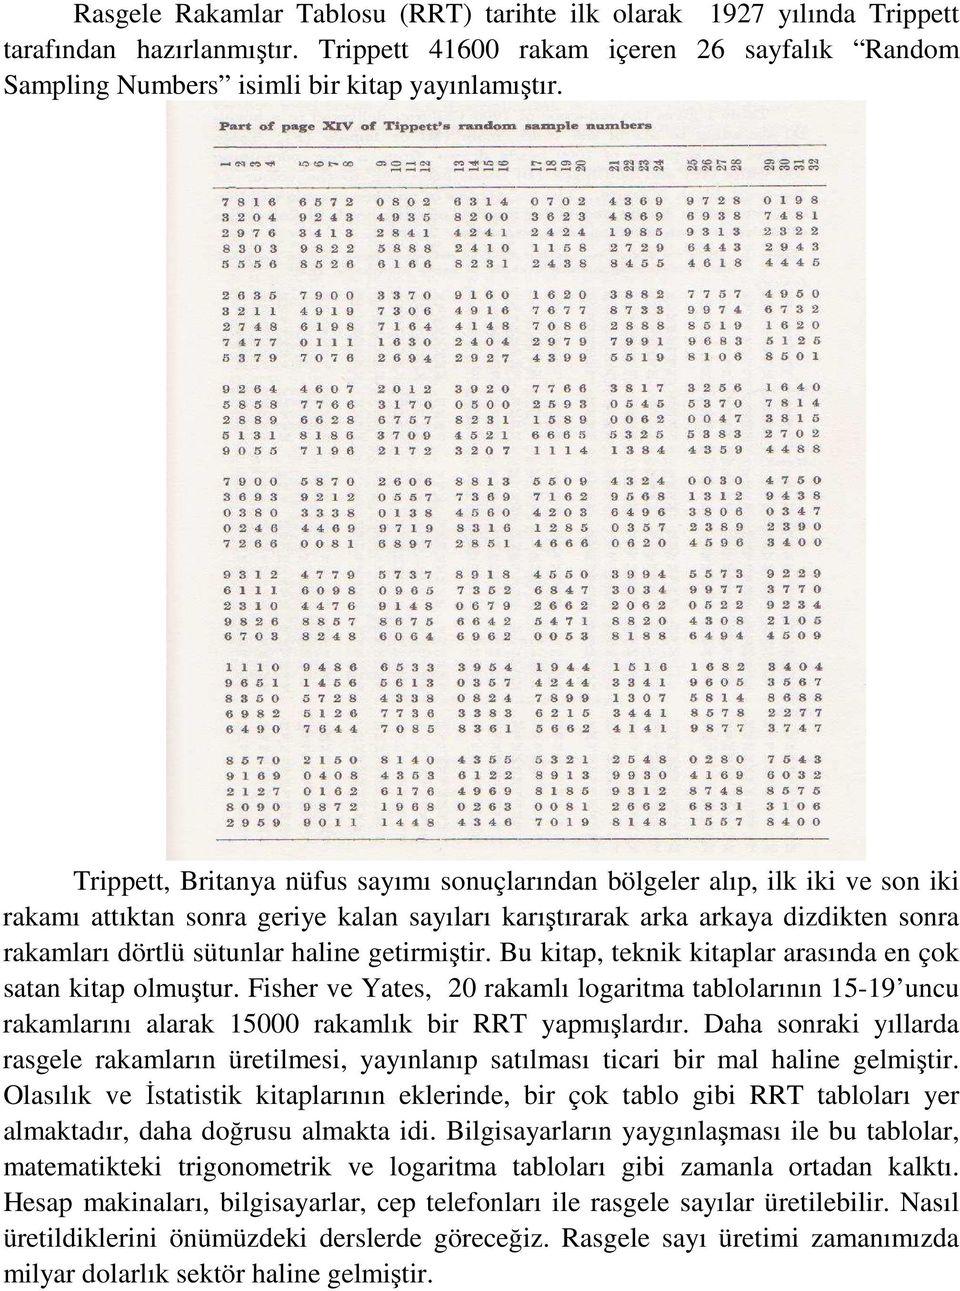 getirmiştir. Bu kitap, teknik kitaplar arasında en çok satan kitap olmuştur. Fisher ve Yates, 20 rakamlı logaritma tablolarının 15-19 uncu rakamlarını alarak 15000 rakamlık bir RRT yapmışlardır.